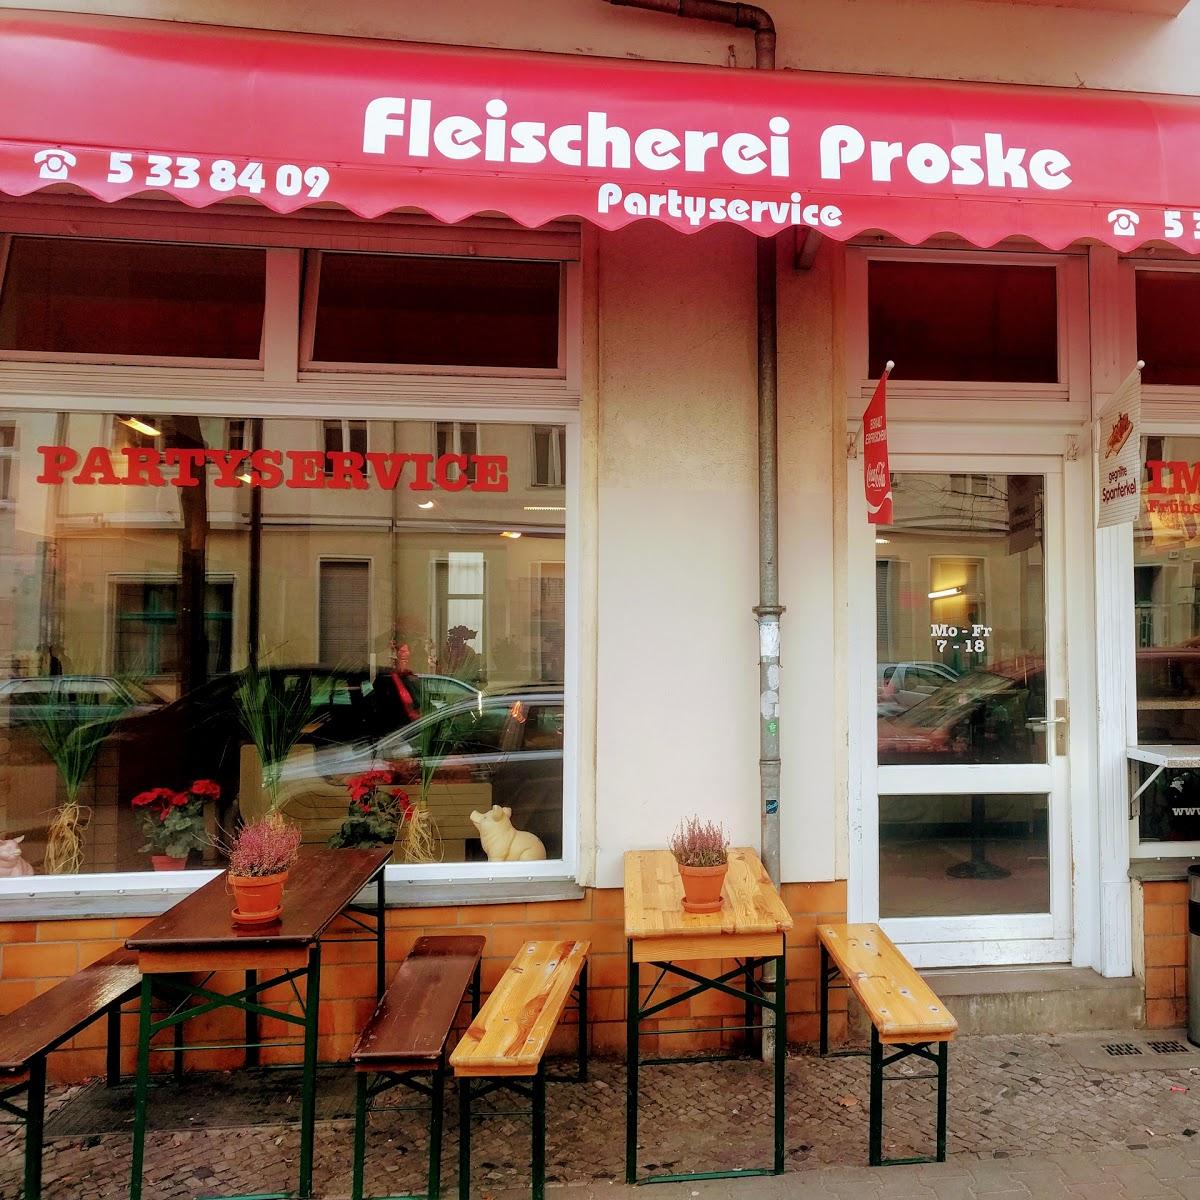 Restaurant "Fleischerei Proske" in Berlin